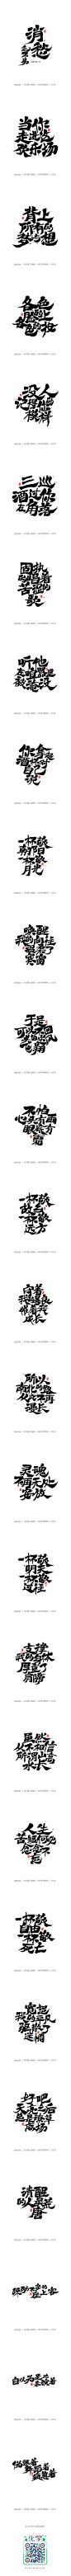 毛不易《消愁》官方MV字体设计-字体传奇网-中国首个字体品牌设计师交流网